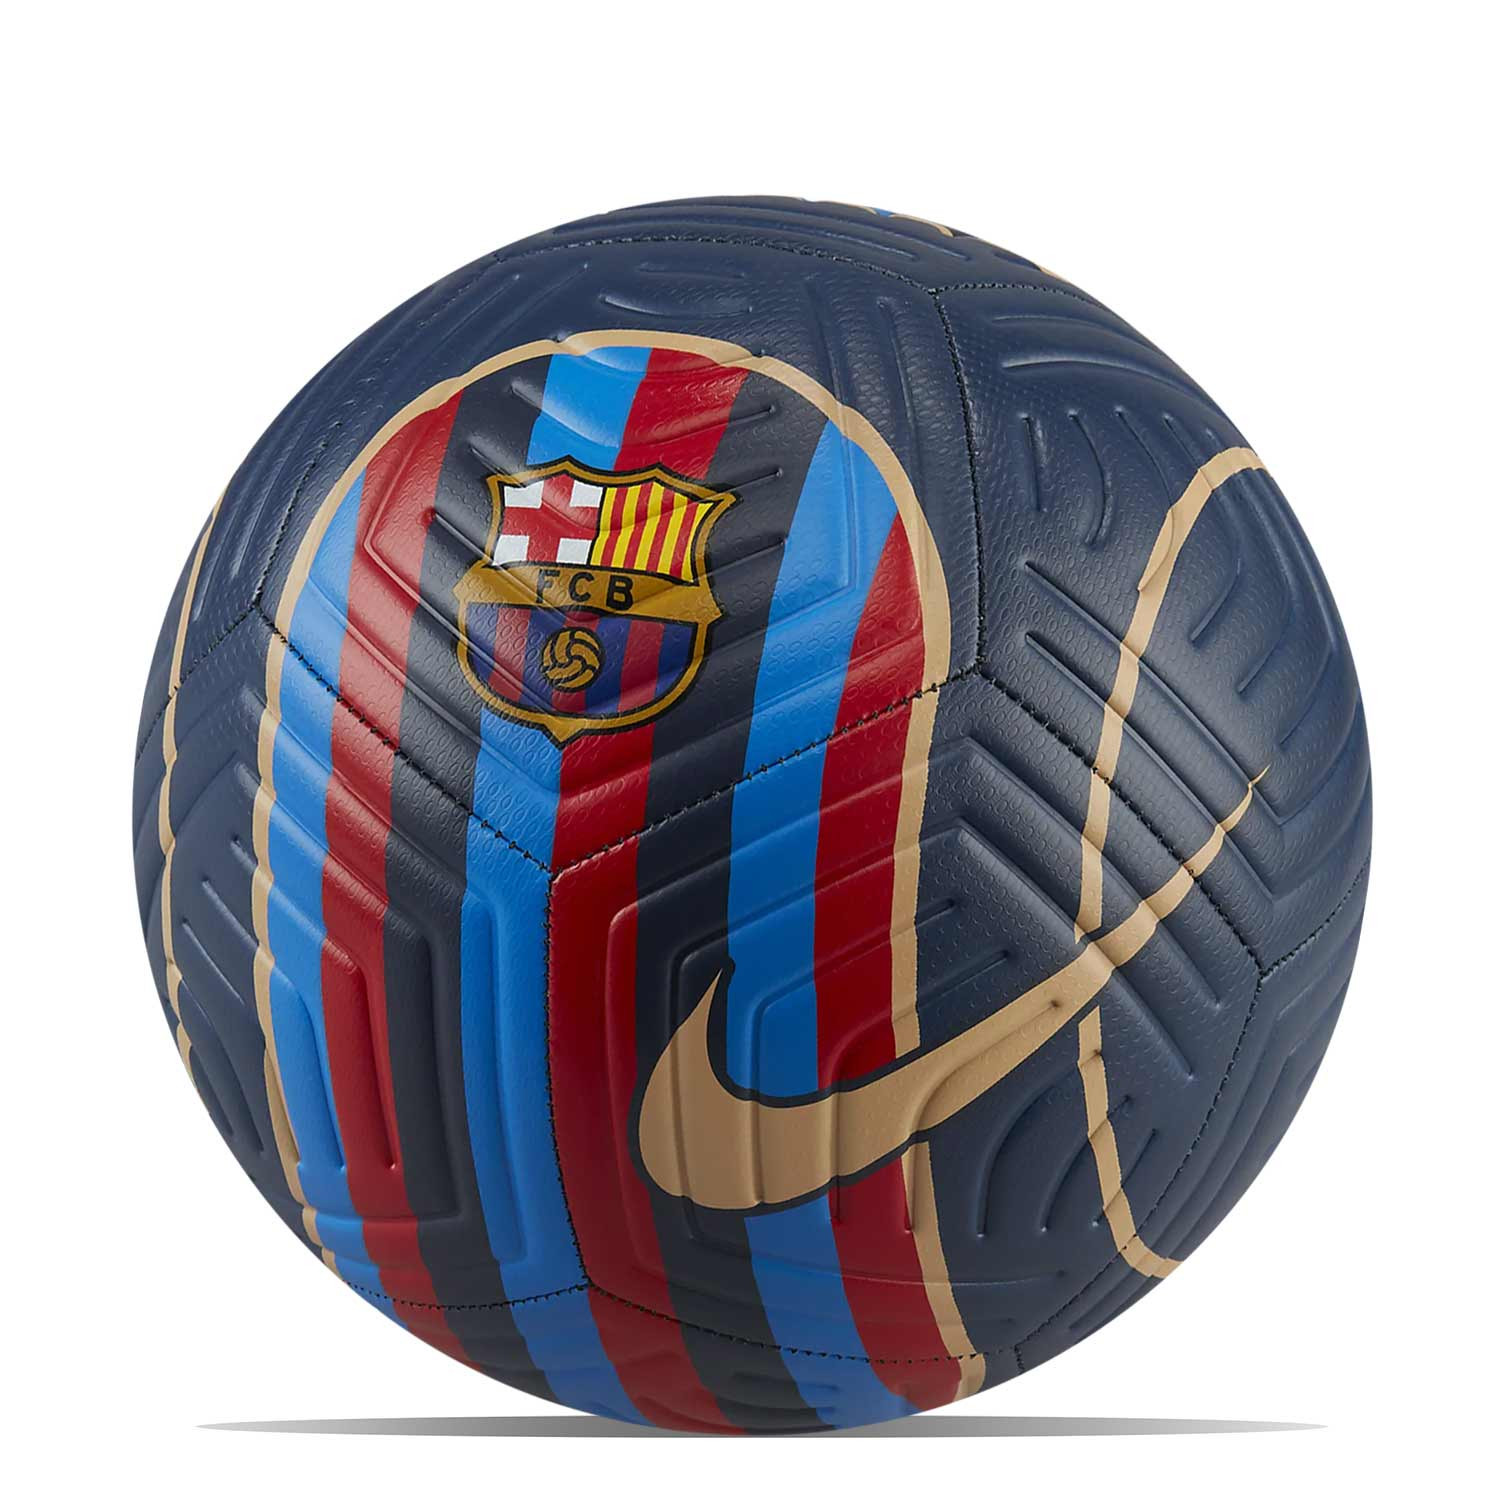 Compañero Calumnia Emperador Balón Nike Barcelona Strike talla 4 azul marino | futbolmania